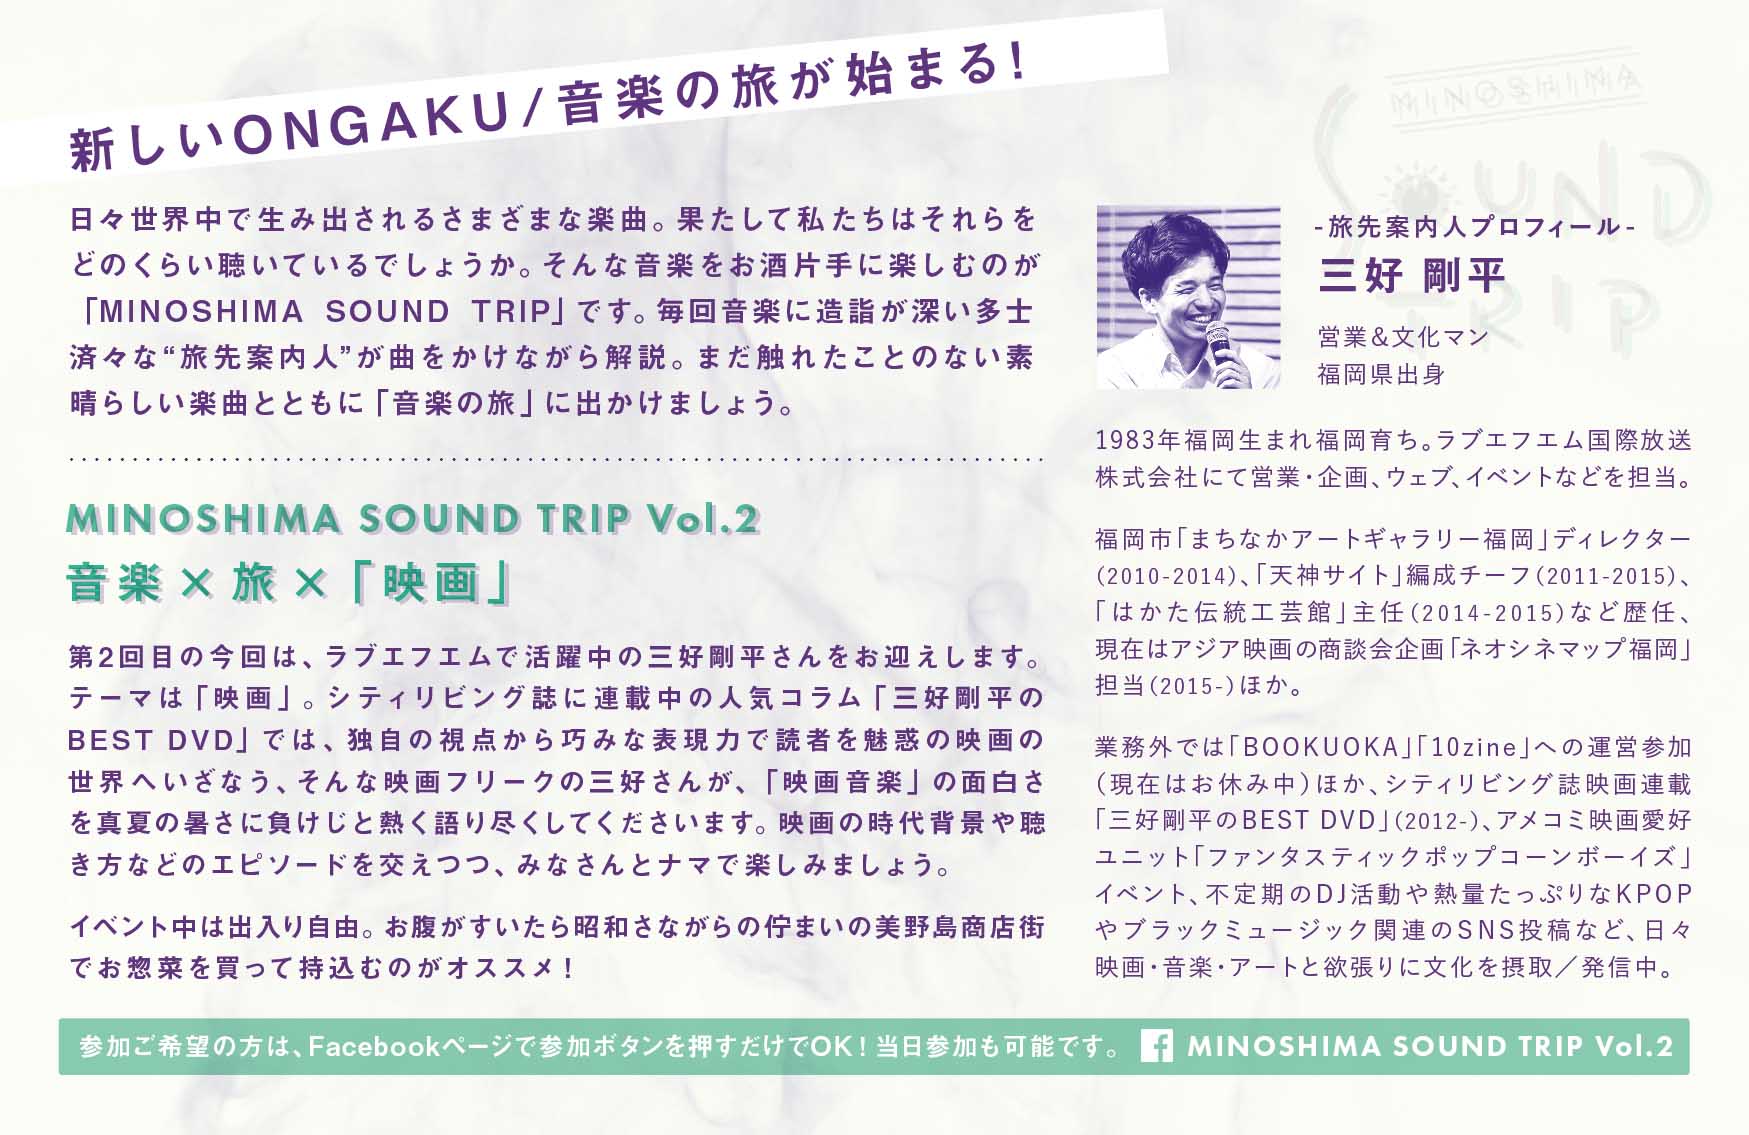 美野島サウンドトリップ Vol.2 フライヤー